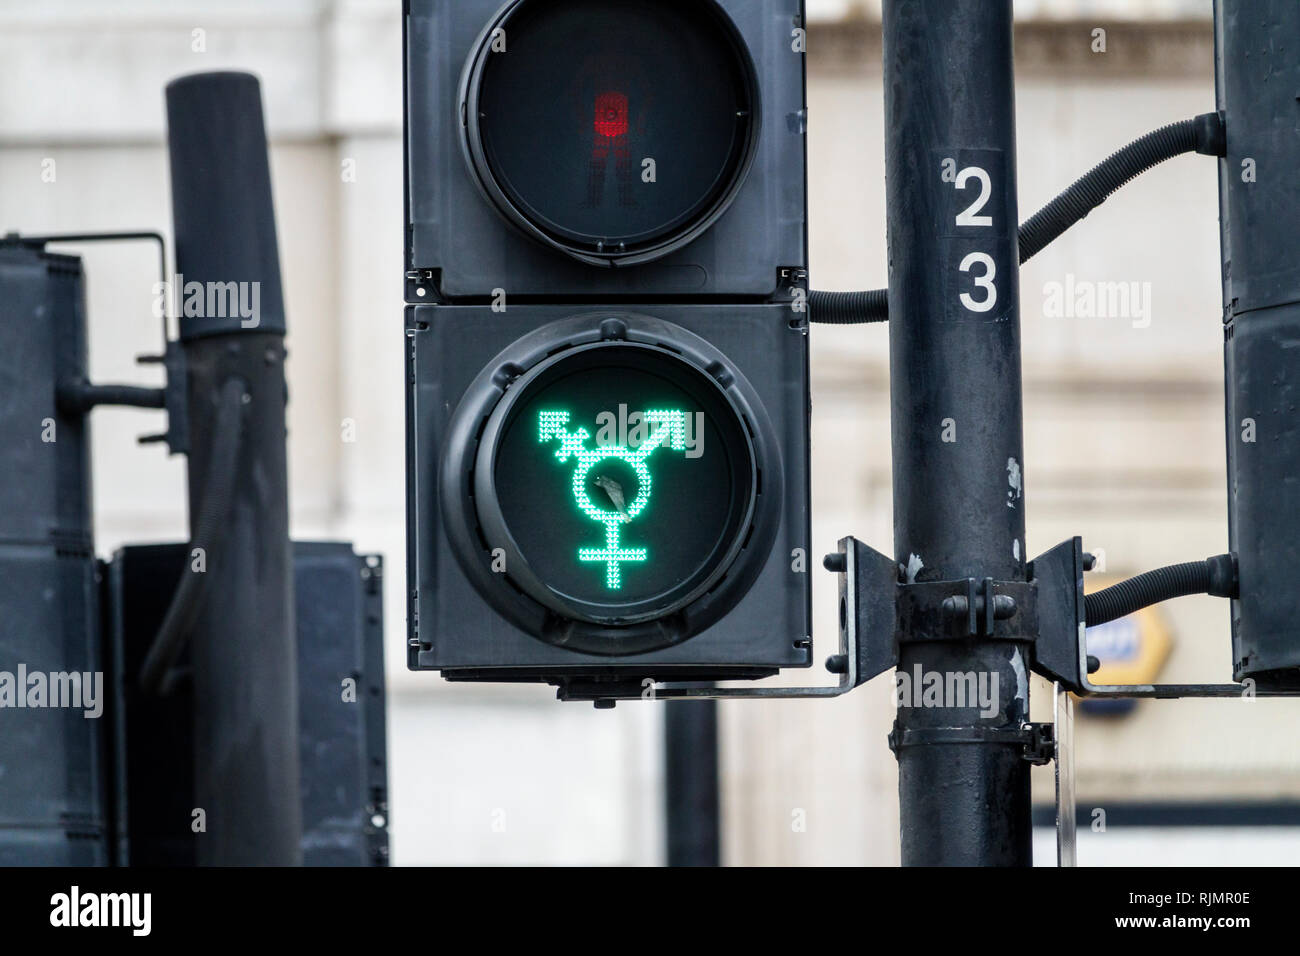 Vereinigtes Königreich Großbritannien England London Trafalgar Square Fußgängerüberweg Licht Geschlecht Symbol Transporte von London Homosexuell Stolz Licht transg Stockfoto